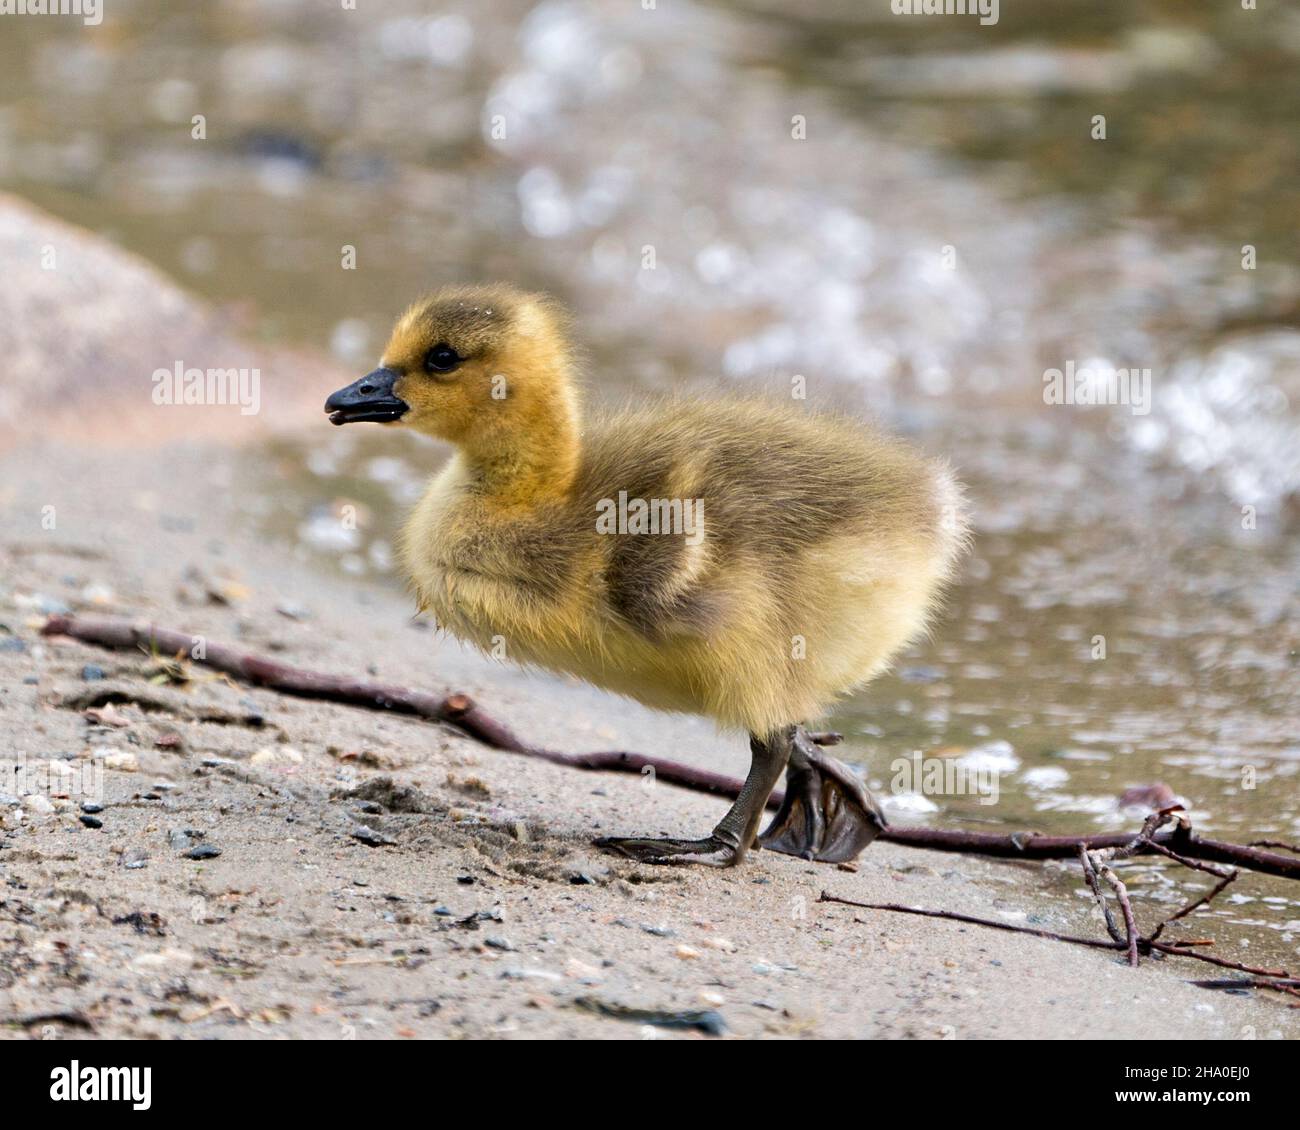 Canadian baby gosling primo piano profilo vista camminare sul bordo di acqua nel suo ambiente e habitat. Canada Goose Image. Immagine. Verticale. Foto. Foto Stock